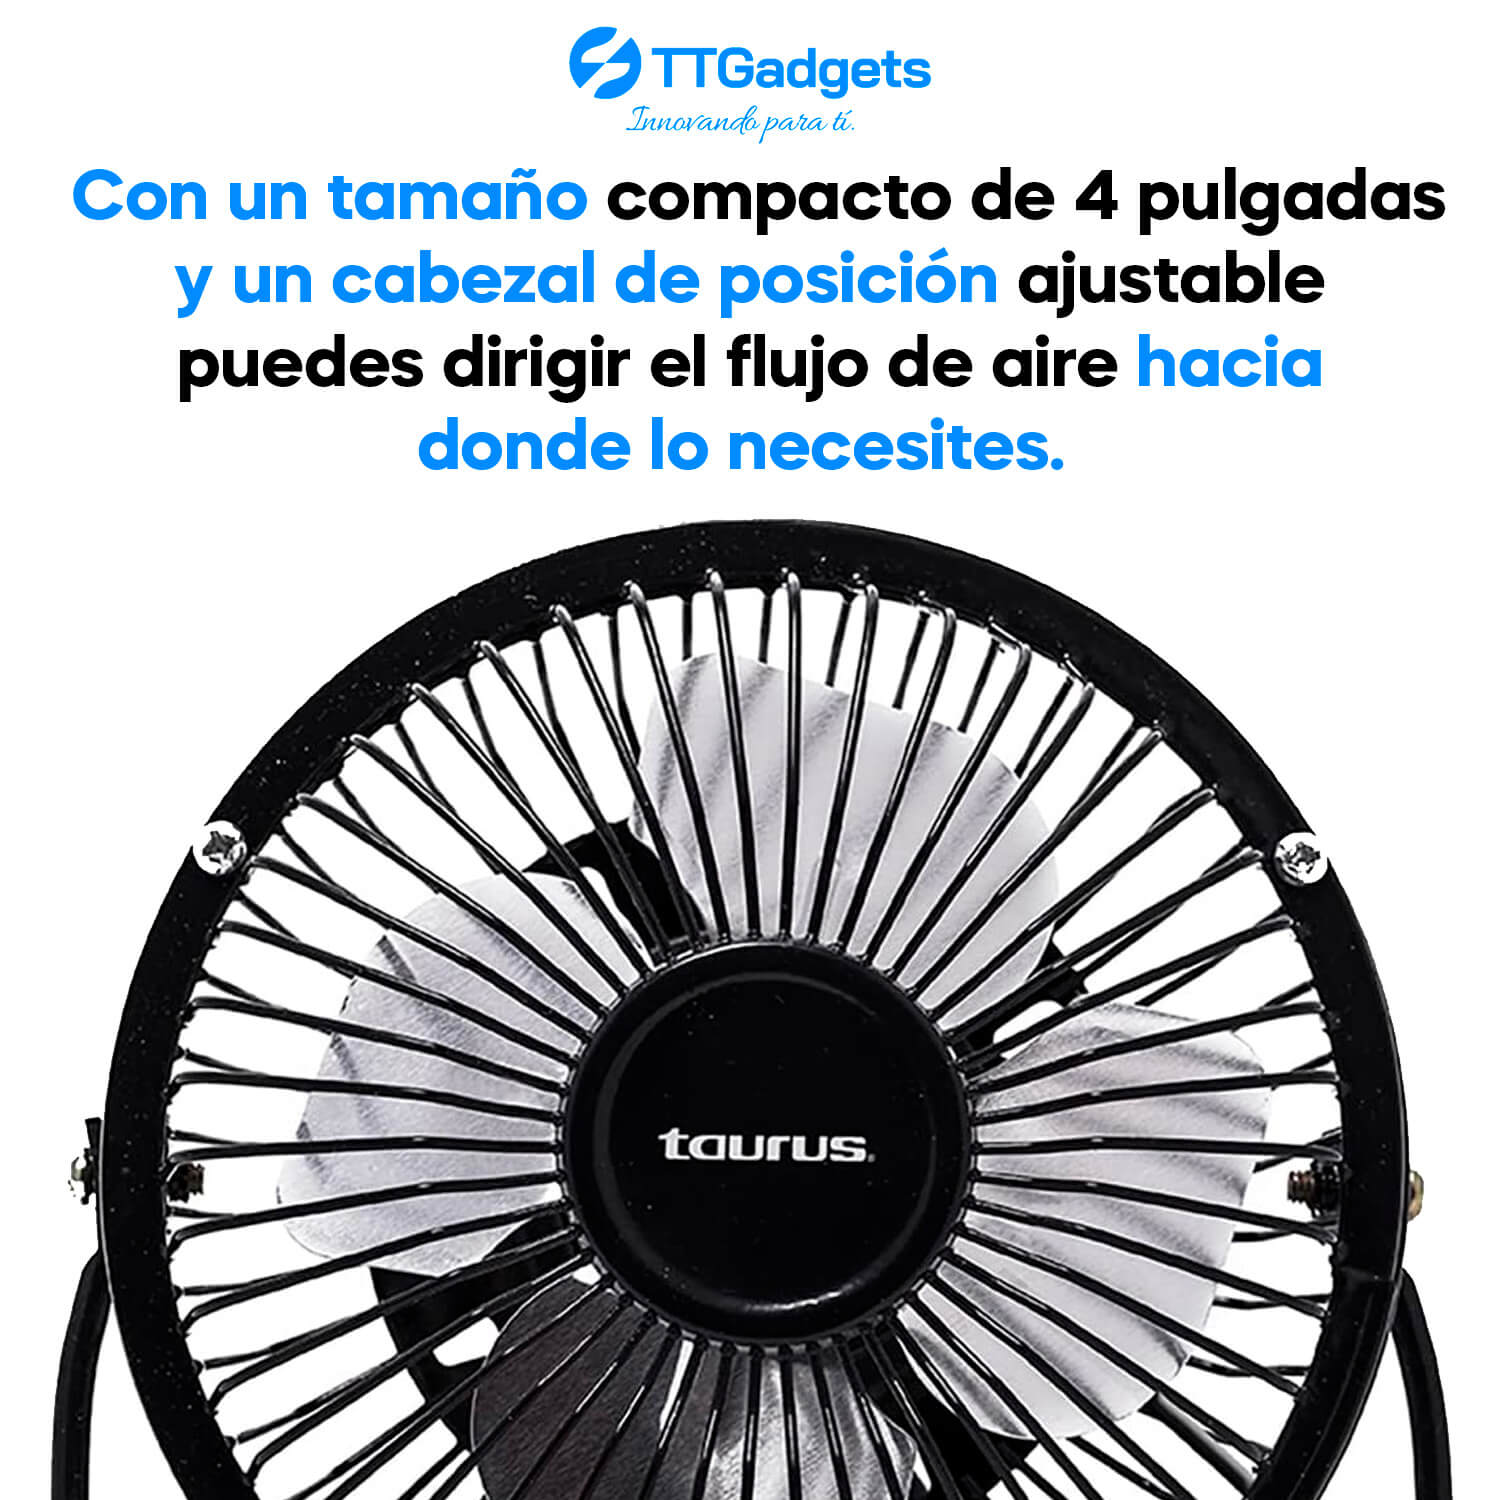 Super Taurus Mini Fan: Ventilador de Escritorio | Ventilador Portátil | 4 Pulgadas | Conexción USB Ideal para Oficina y tu hogar | 30 días de garantía